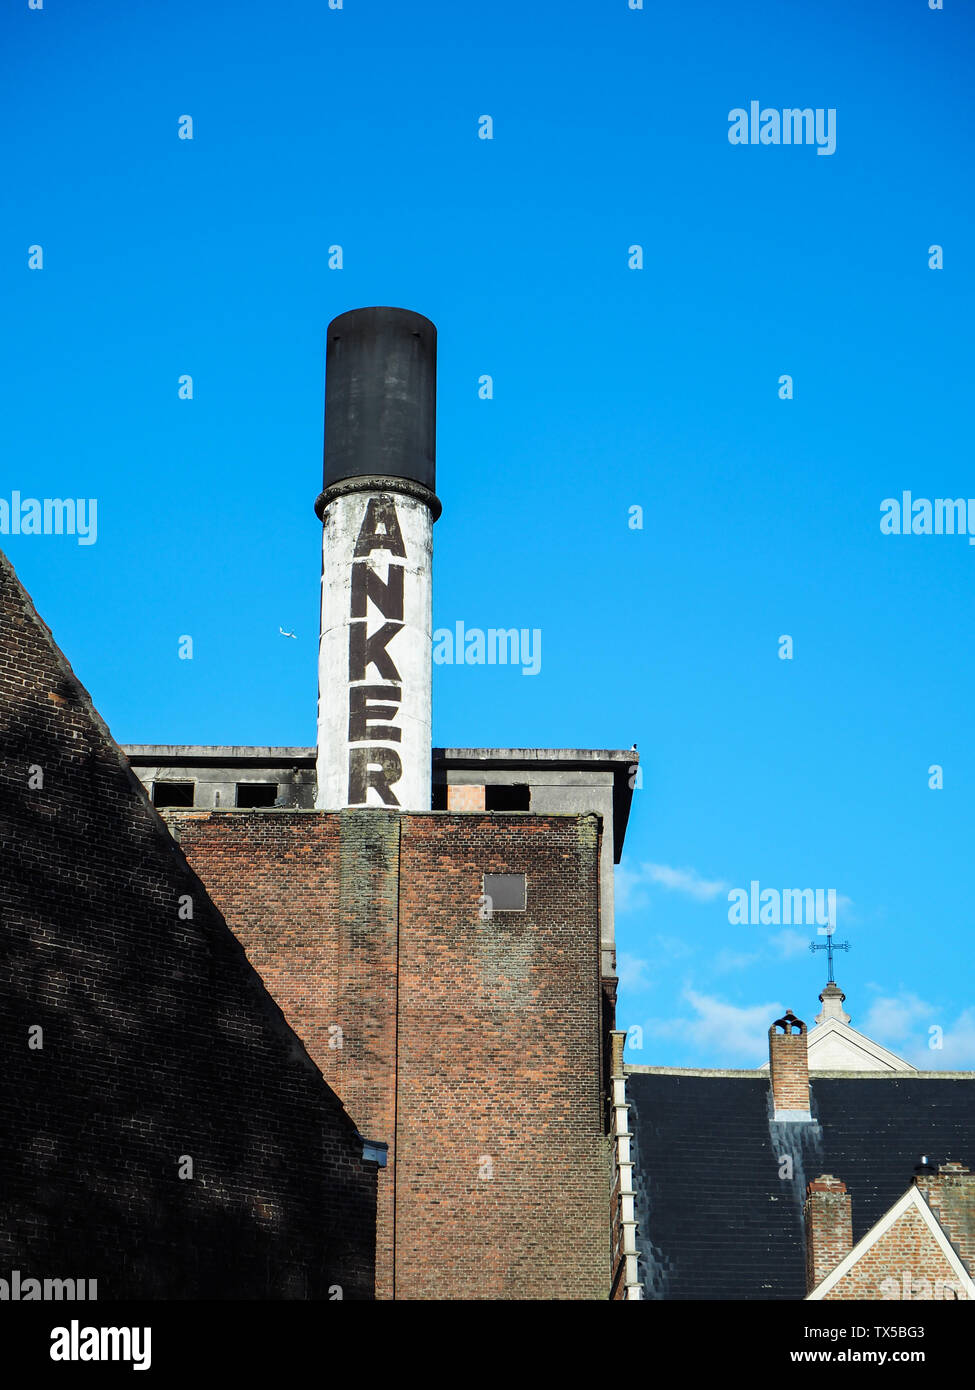 October 2018 - Mechelen, Belgium: Old chimney of the beer brewery Het Anker, producer of the beer Golden Carolus Stock Photo